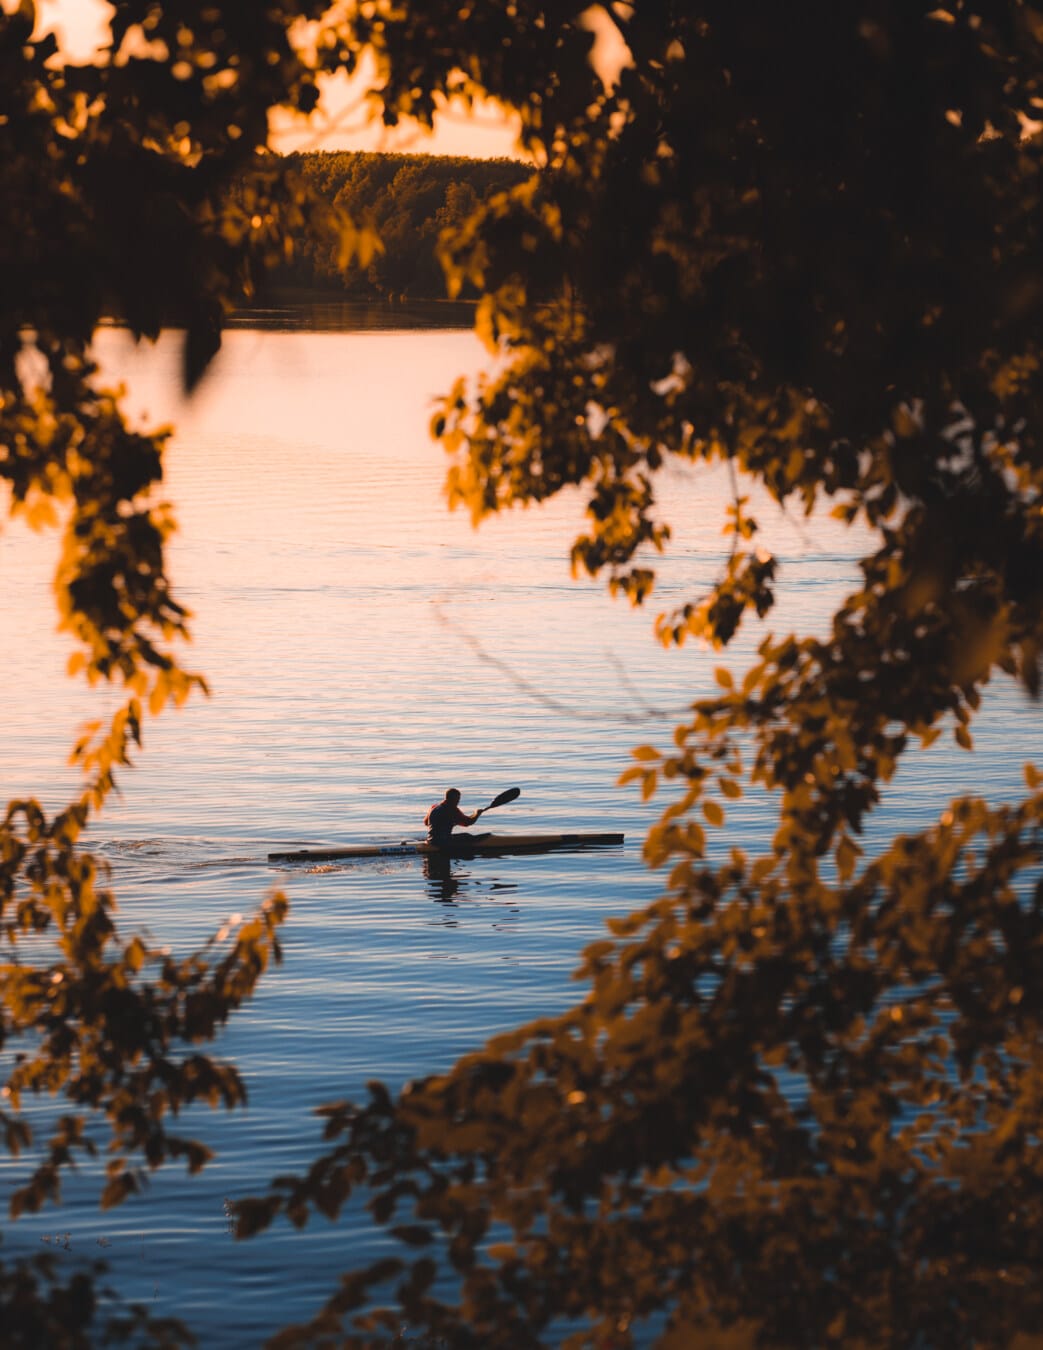 chèo thuyền kayak, bờ hồ, mùa thu mùa, màu vàng nâu, lá, nước, hồ nước, Bình minh, phản ánh, ngoài trời